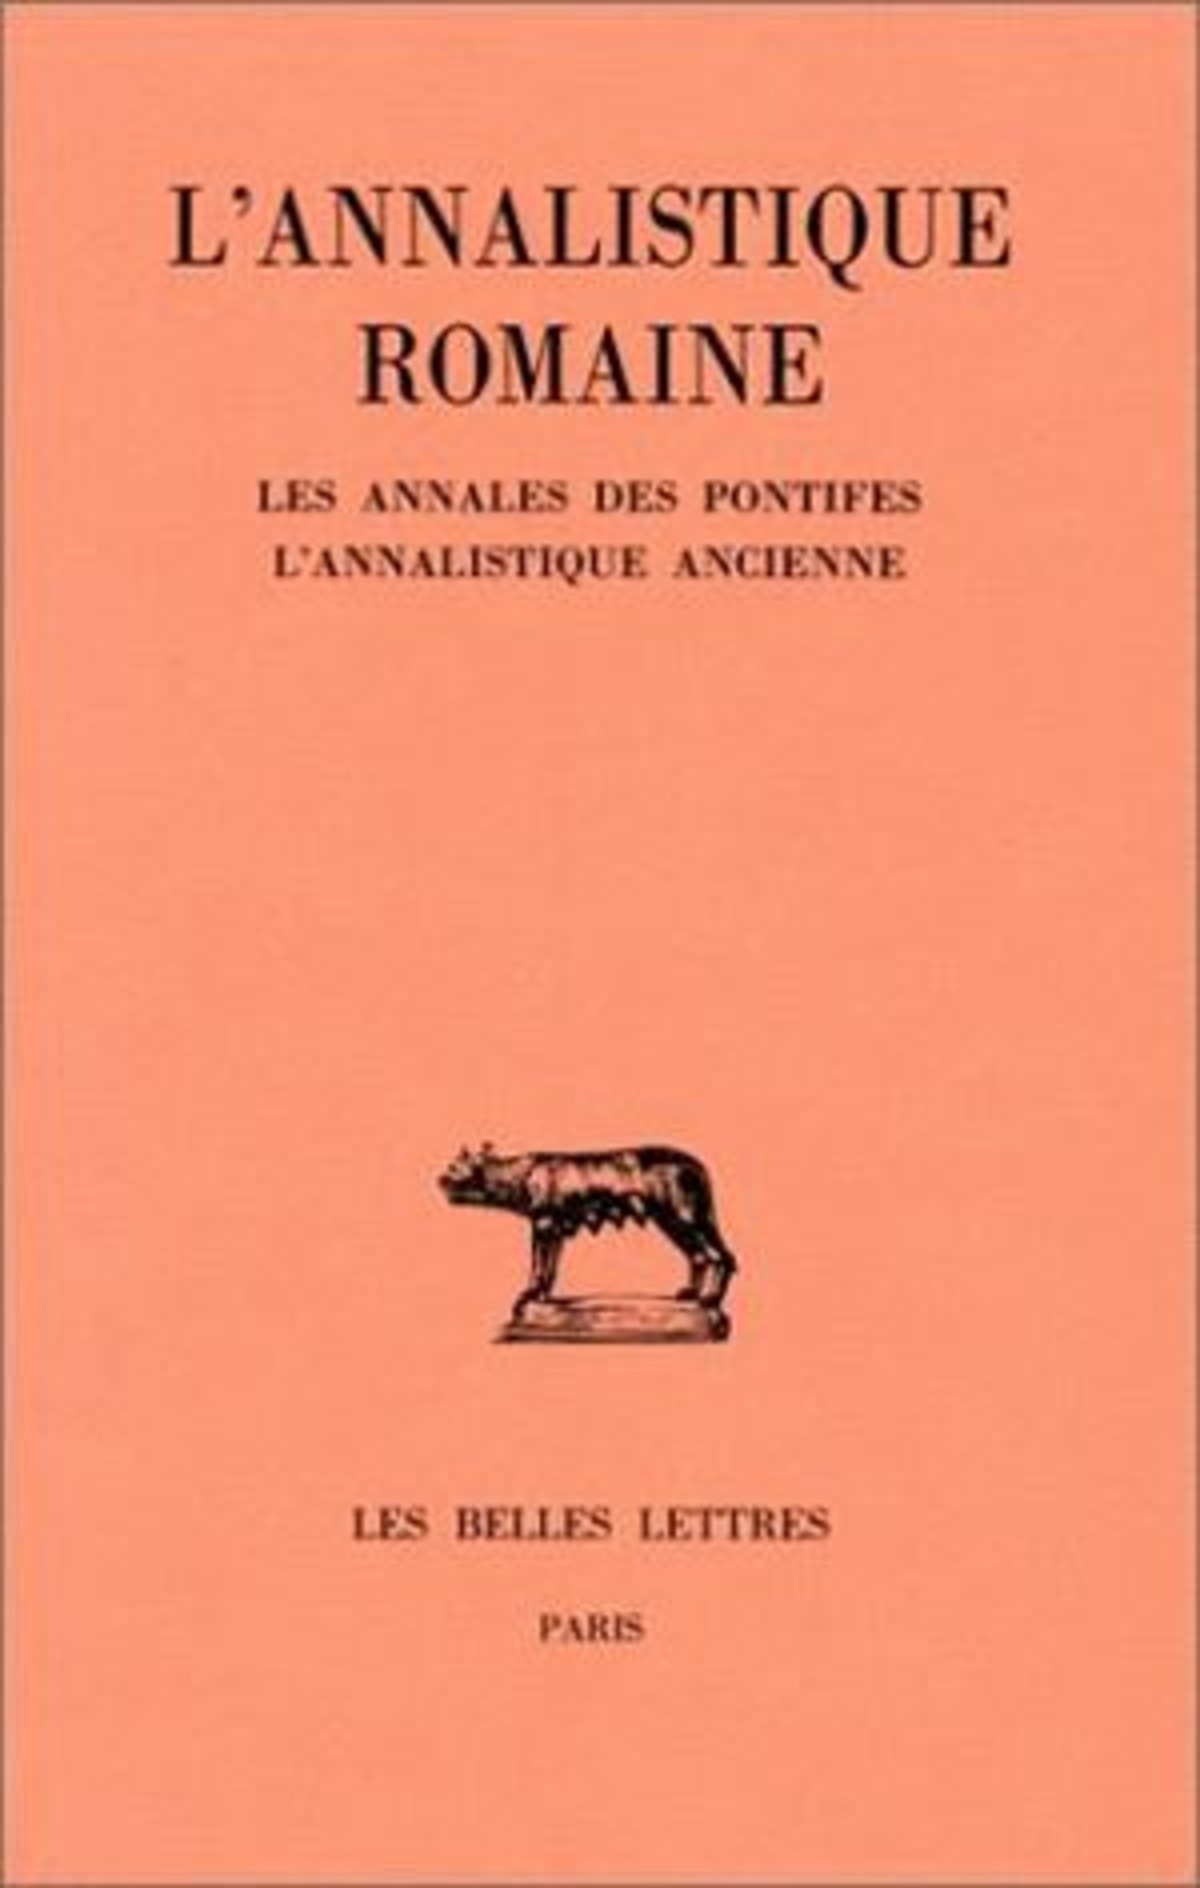 L'Annalistique romaine. Tome I : Les Annales des pontifes. L'Annalistique ancienne (fragments)